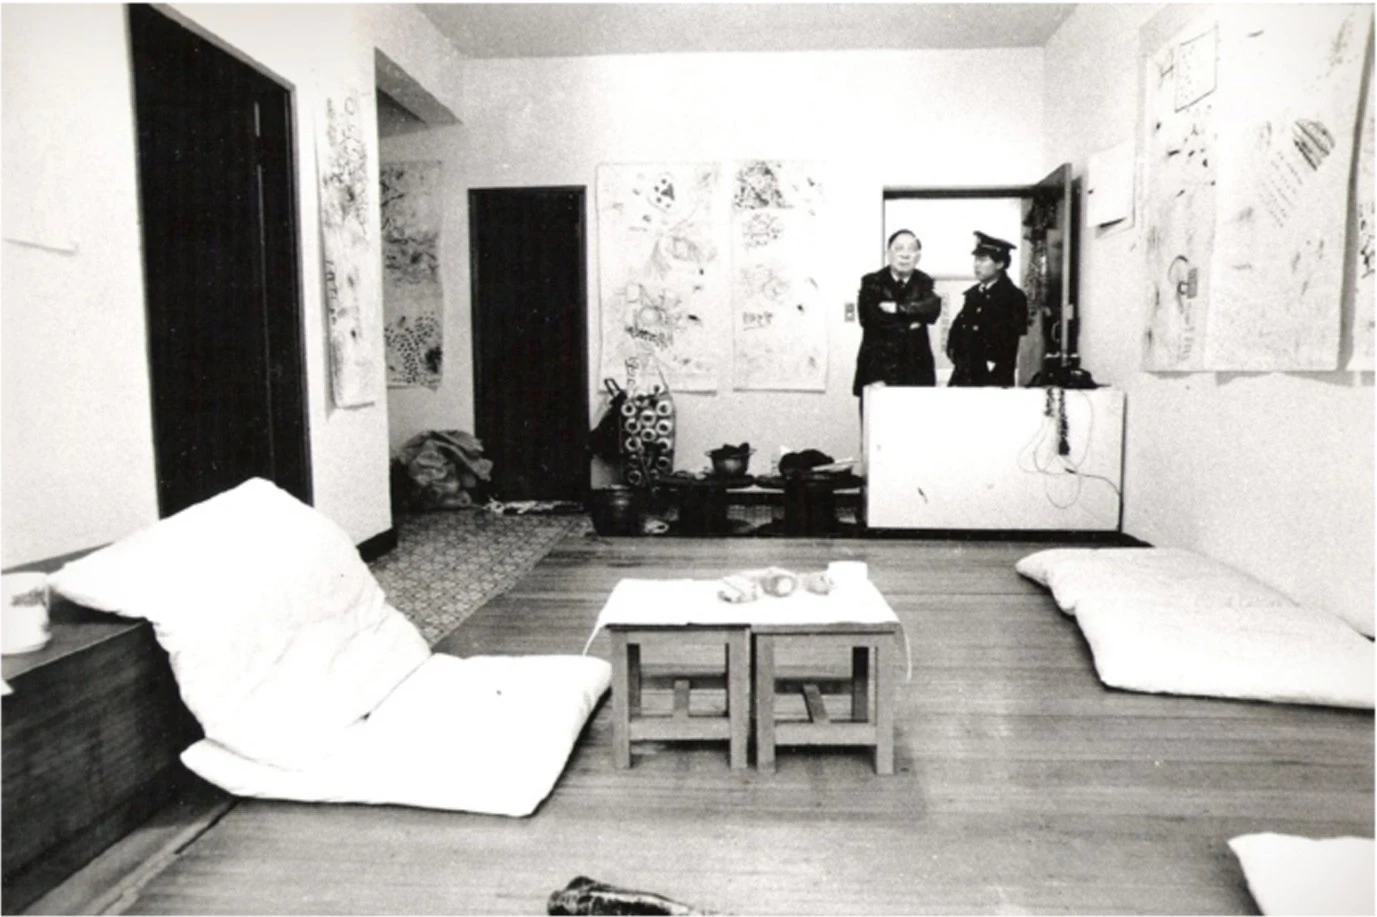 《非線》對外宣傳1986年2月28日由新店李銘盛工作室出發至台北市立美術館作演出，但當日警察到家裡不讓李銘盛出門執行計畫；李銘盛攝影-圖片